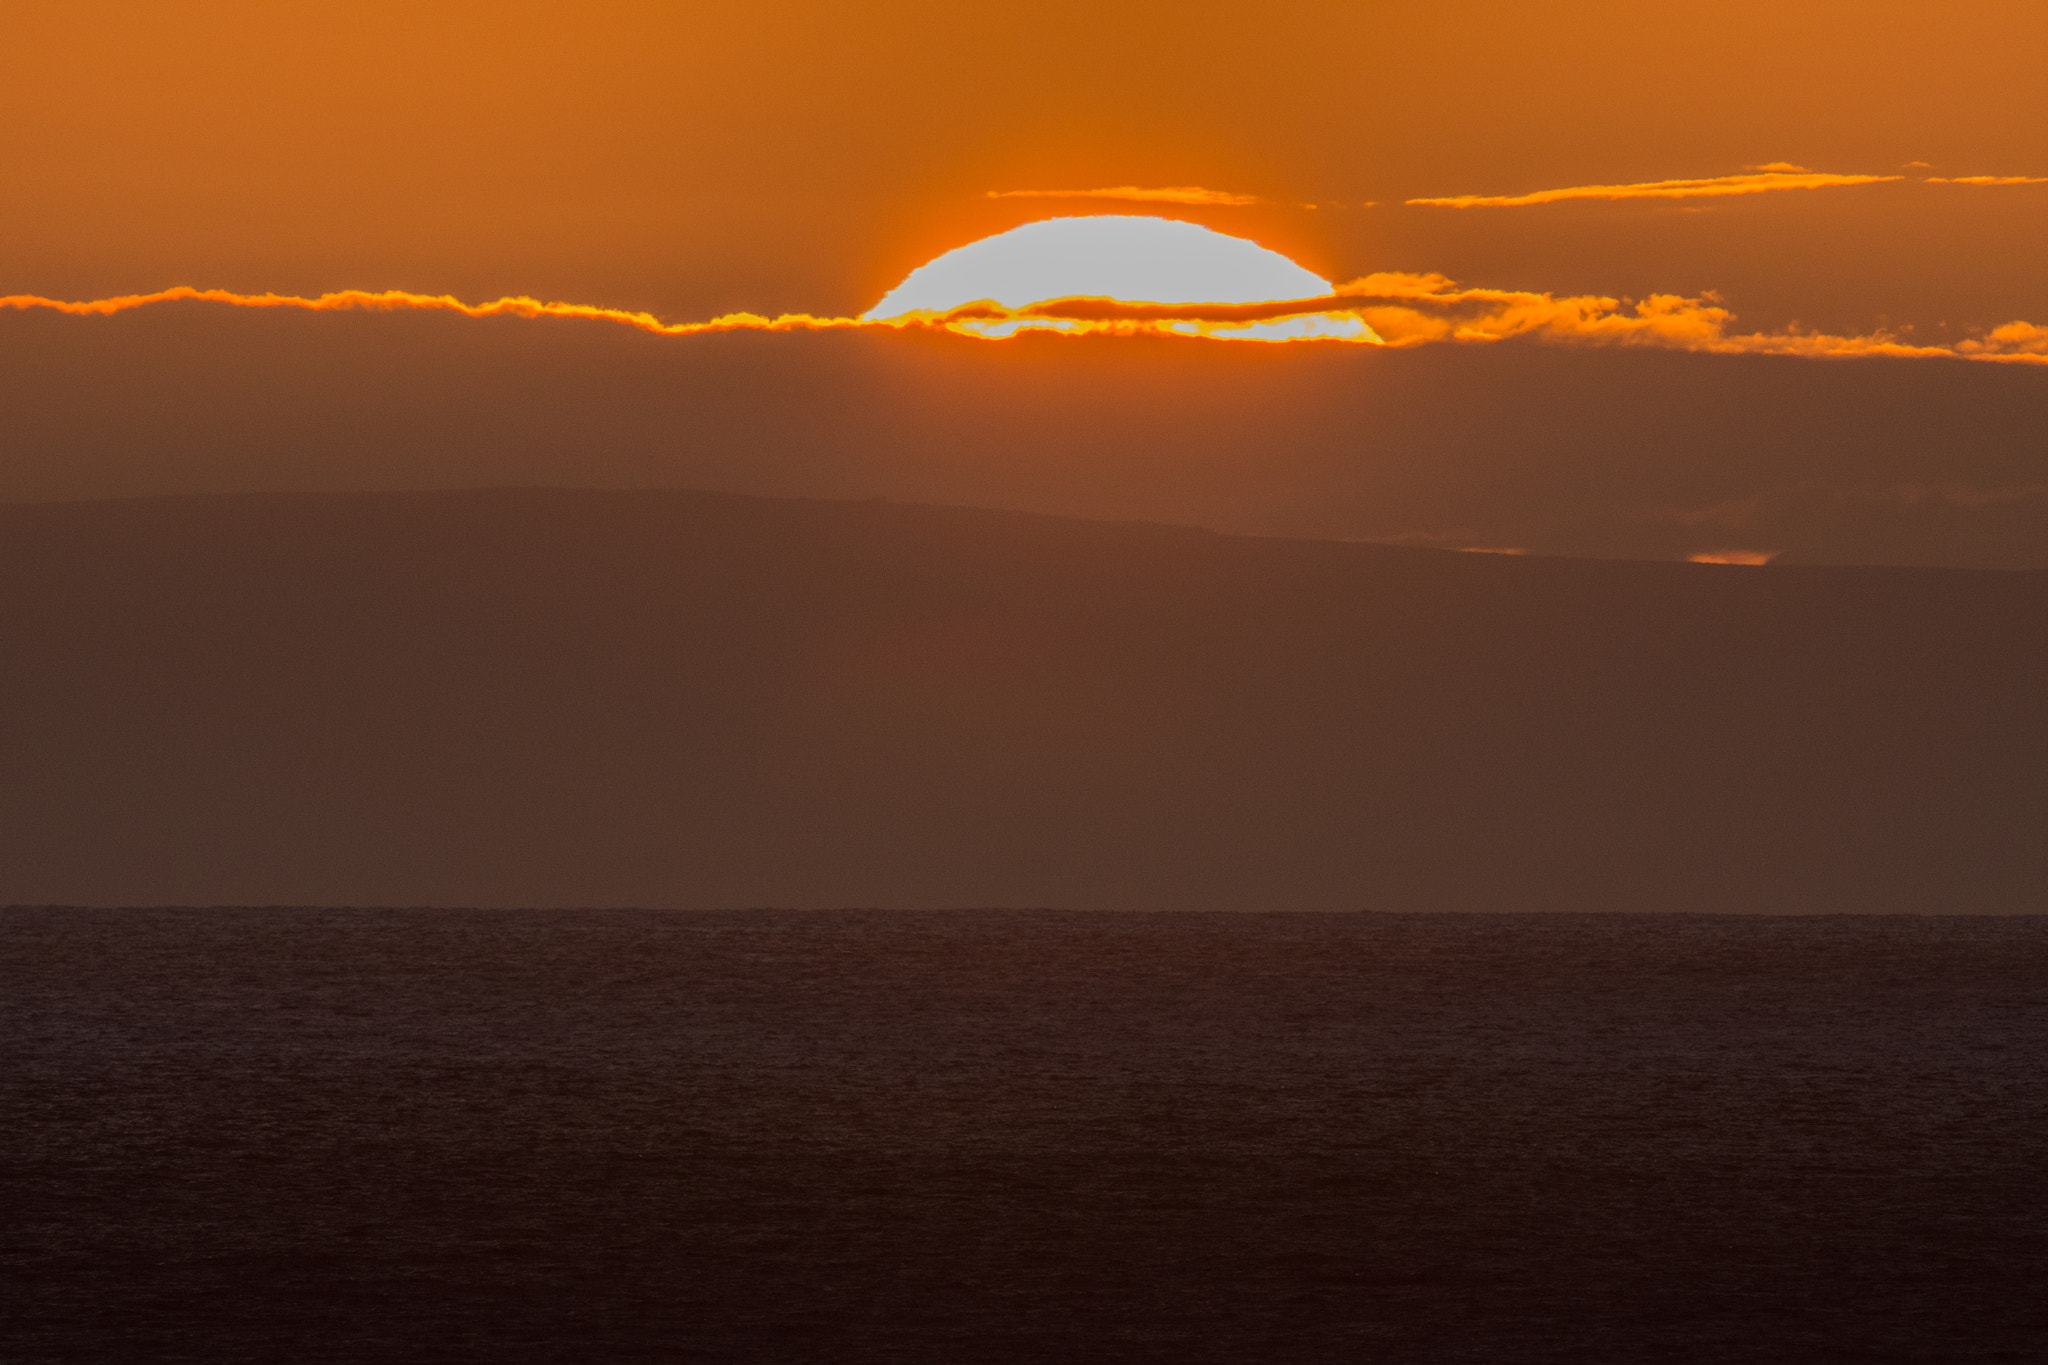 Nikon D7200 + Sigma 24-60mm F2.8 EX DG sample photo. Sunrise over molokai from oahu photography